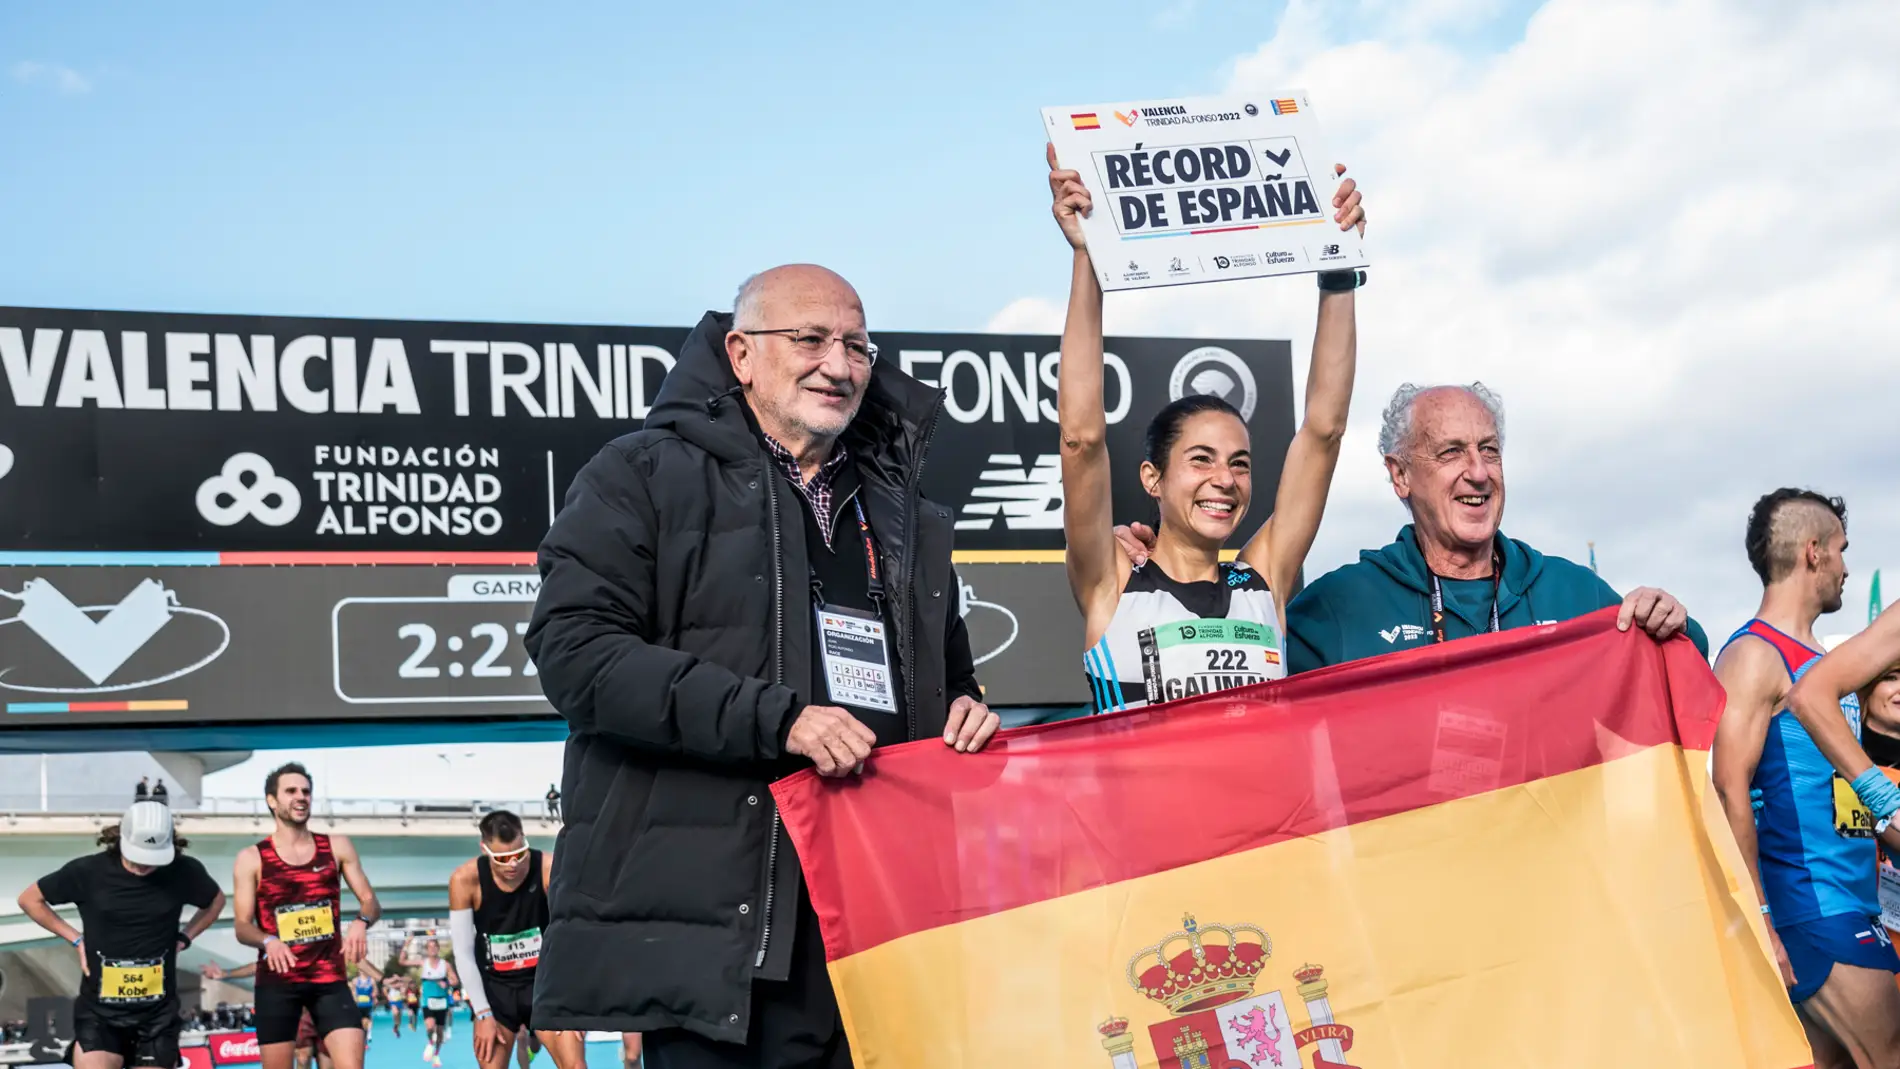 Marta Galimany bate el récord de España (2:26:14) en el Maratón Valencia